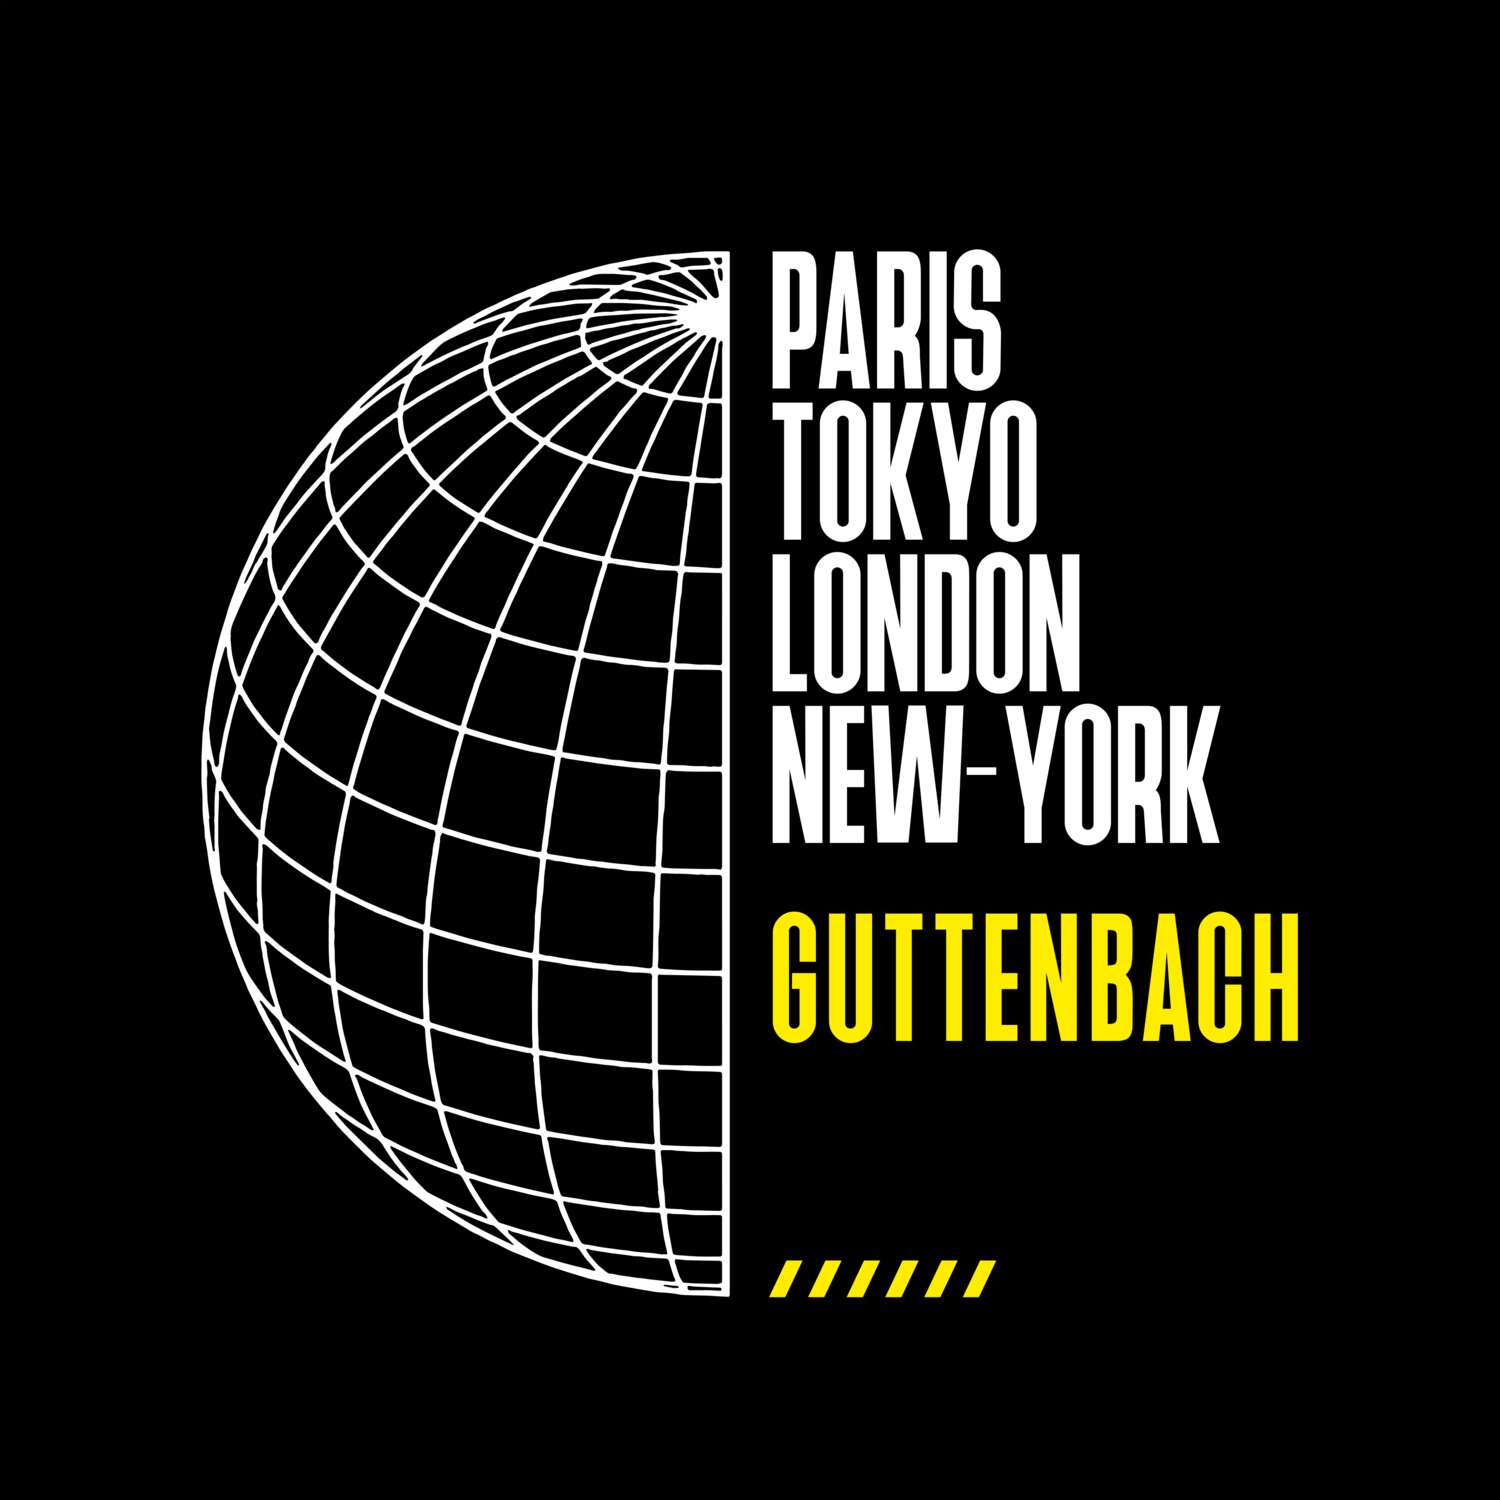 Guttenbach T-Shirt »Paris Tokyo London«